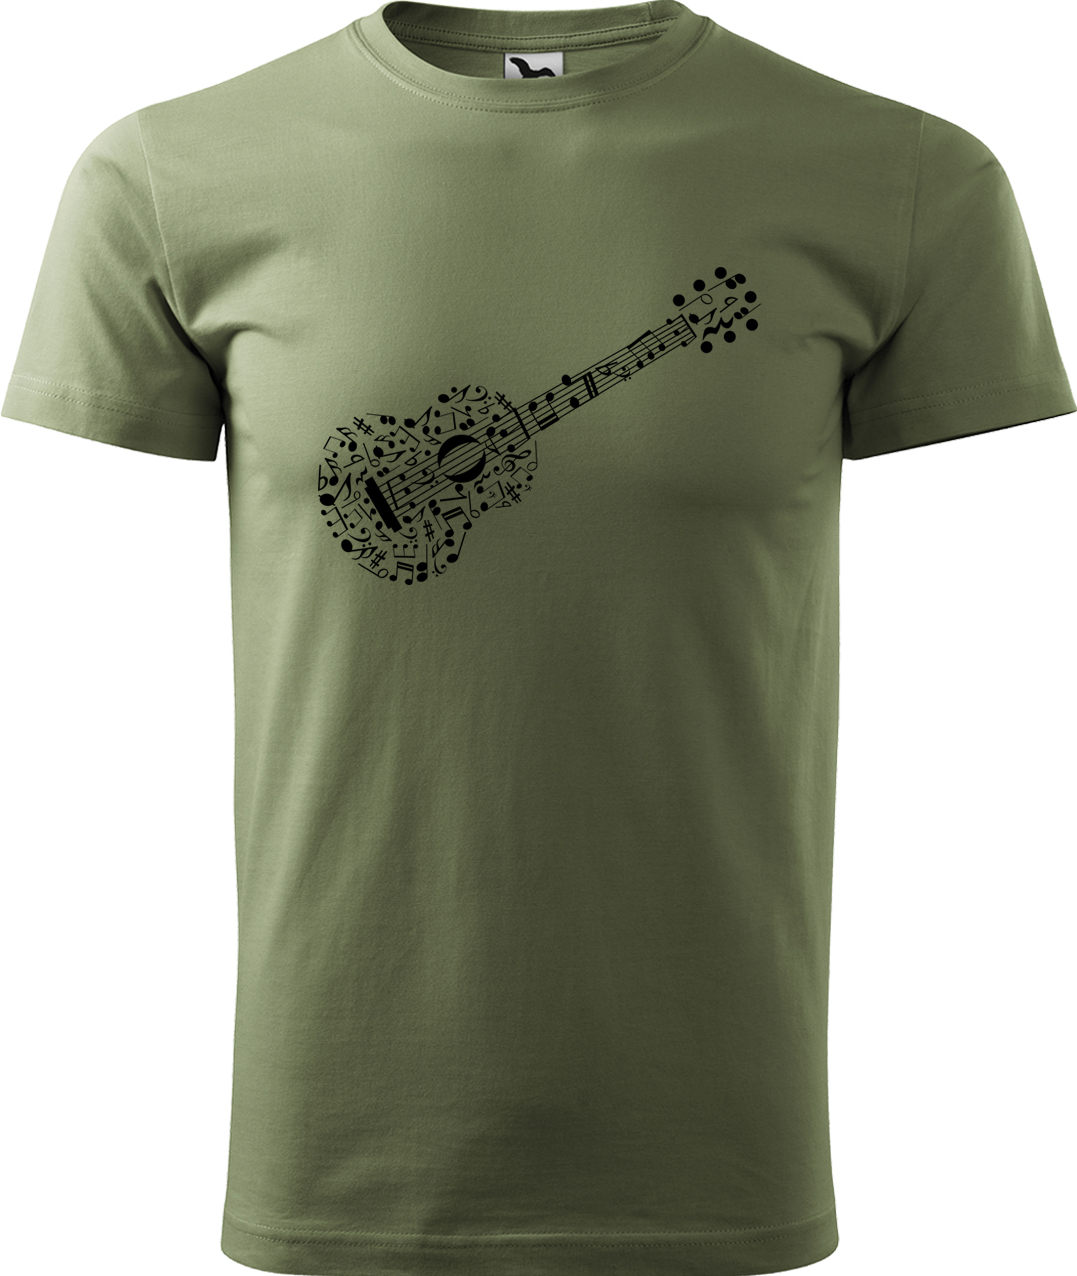 Pánské tričko s kytarou - Kytara z not Velikost: 4XL, Barva: Světlá khaki (28), Střih: pánský